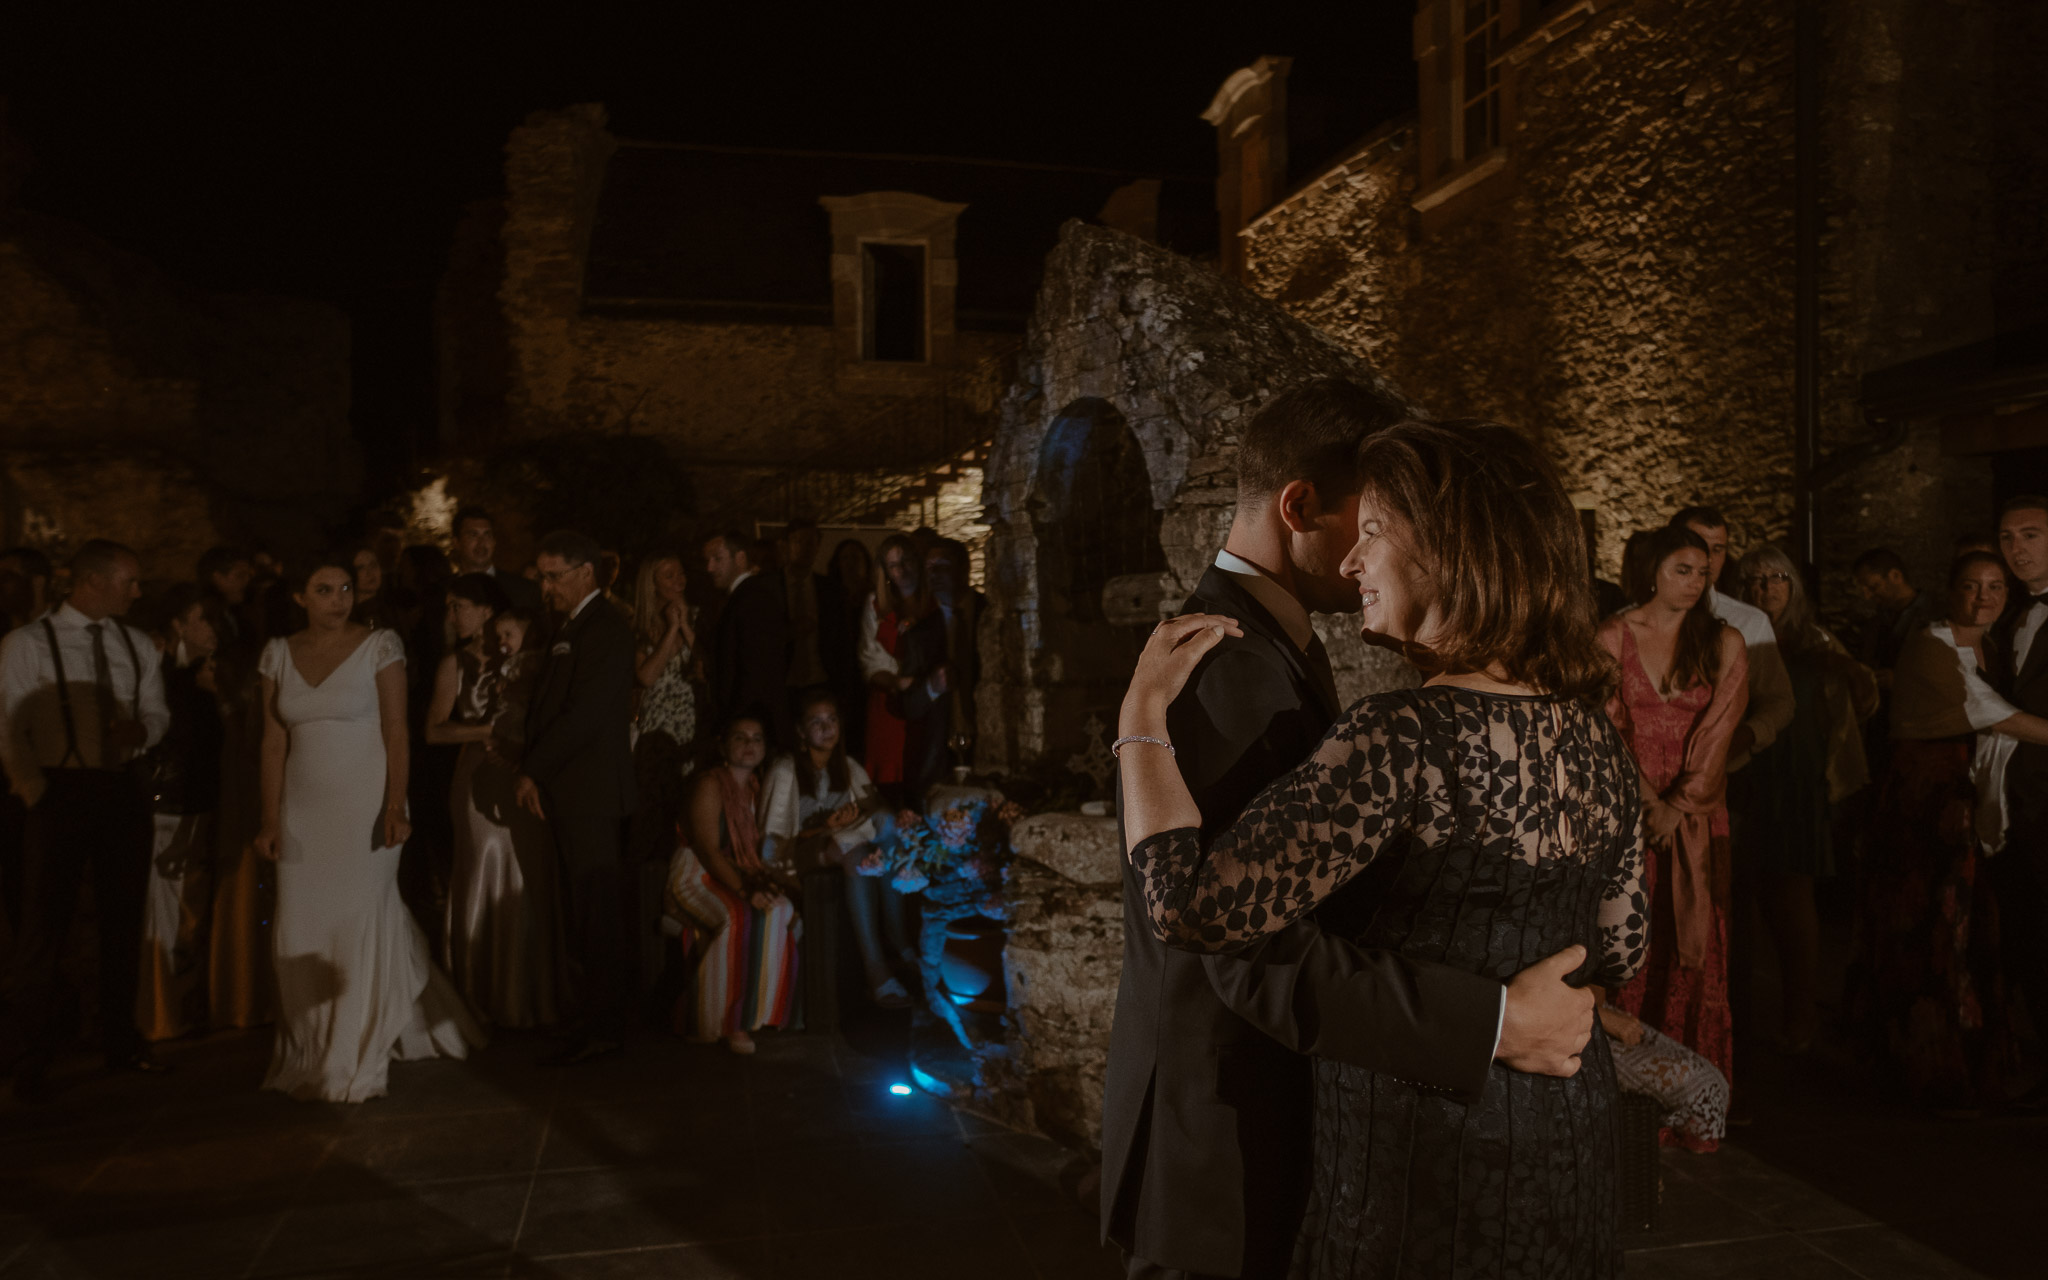 photographies d’un mariage américain au Château de l’Epinay à Saint Georges-sur-Loire